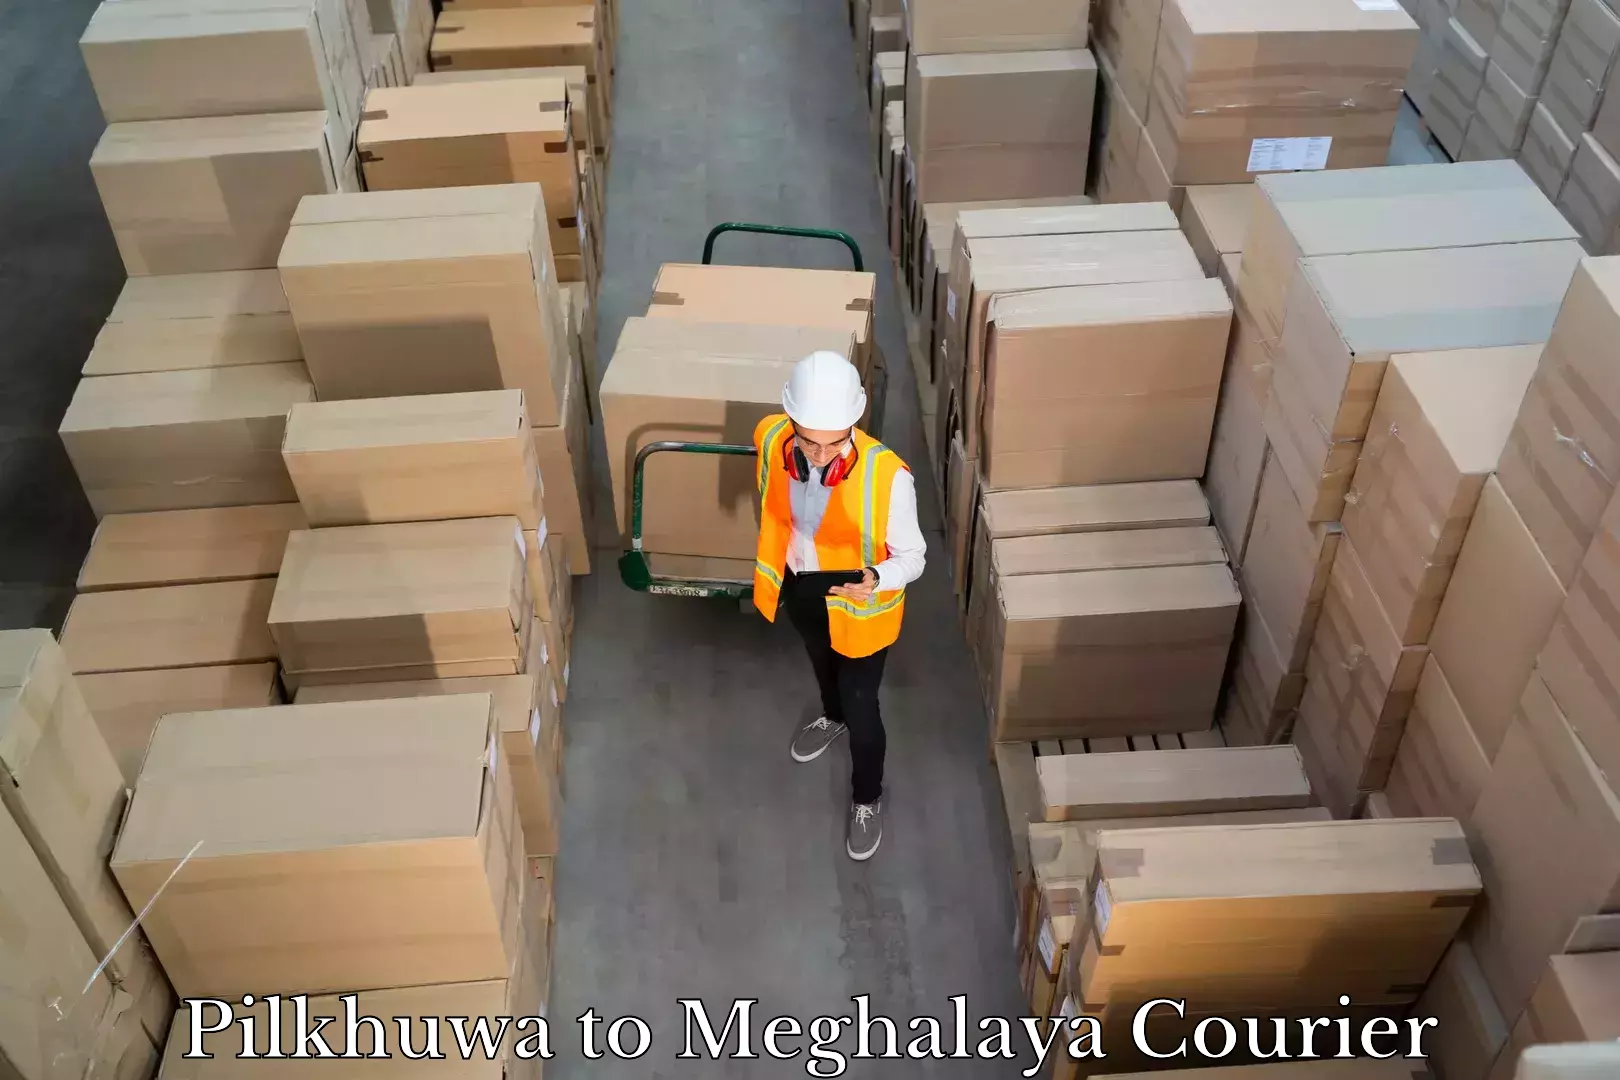 Luggage delivery providers Pilkhuwa to Phulbari